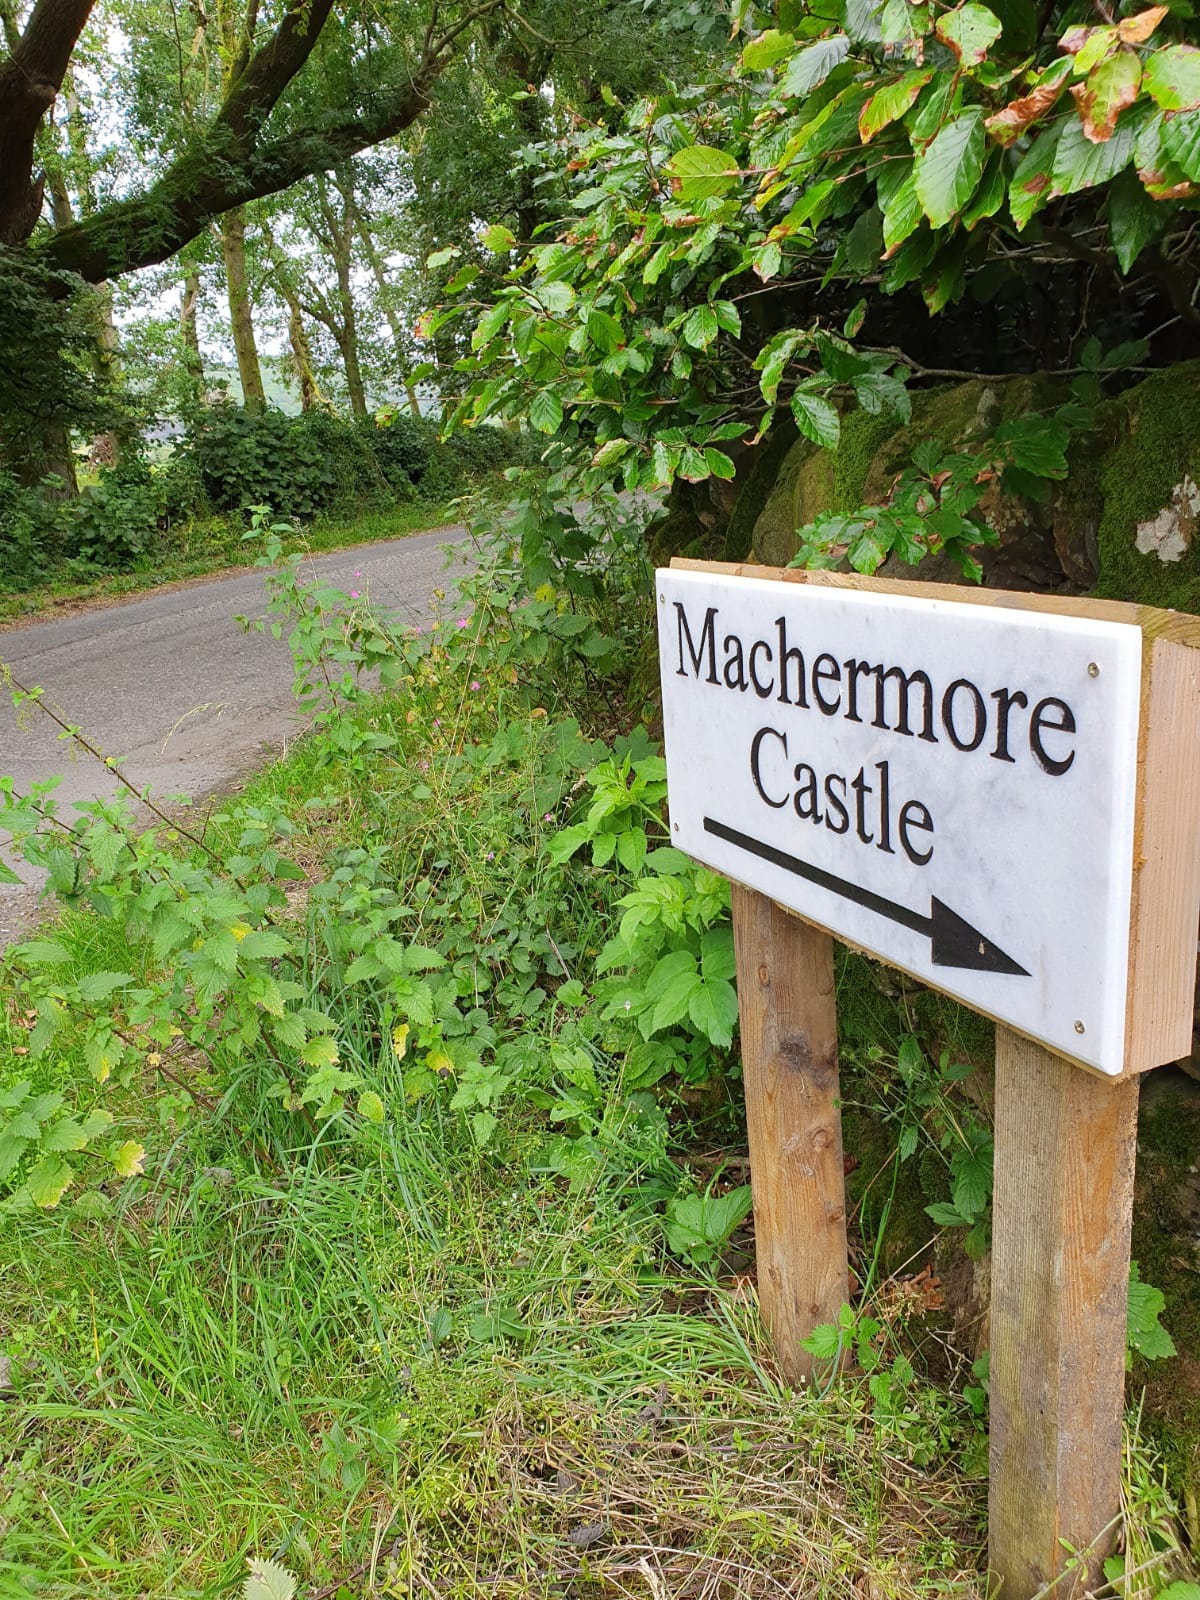 Machermore Castle West lodge